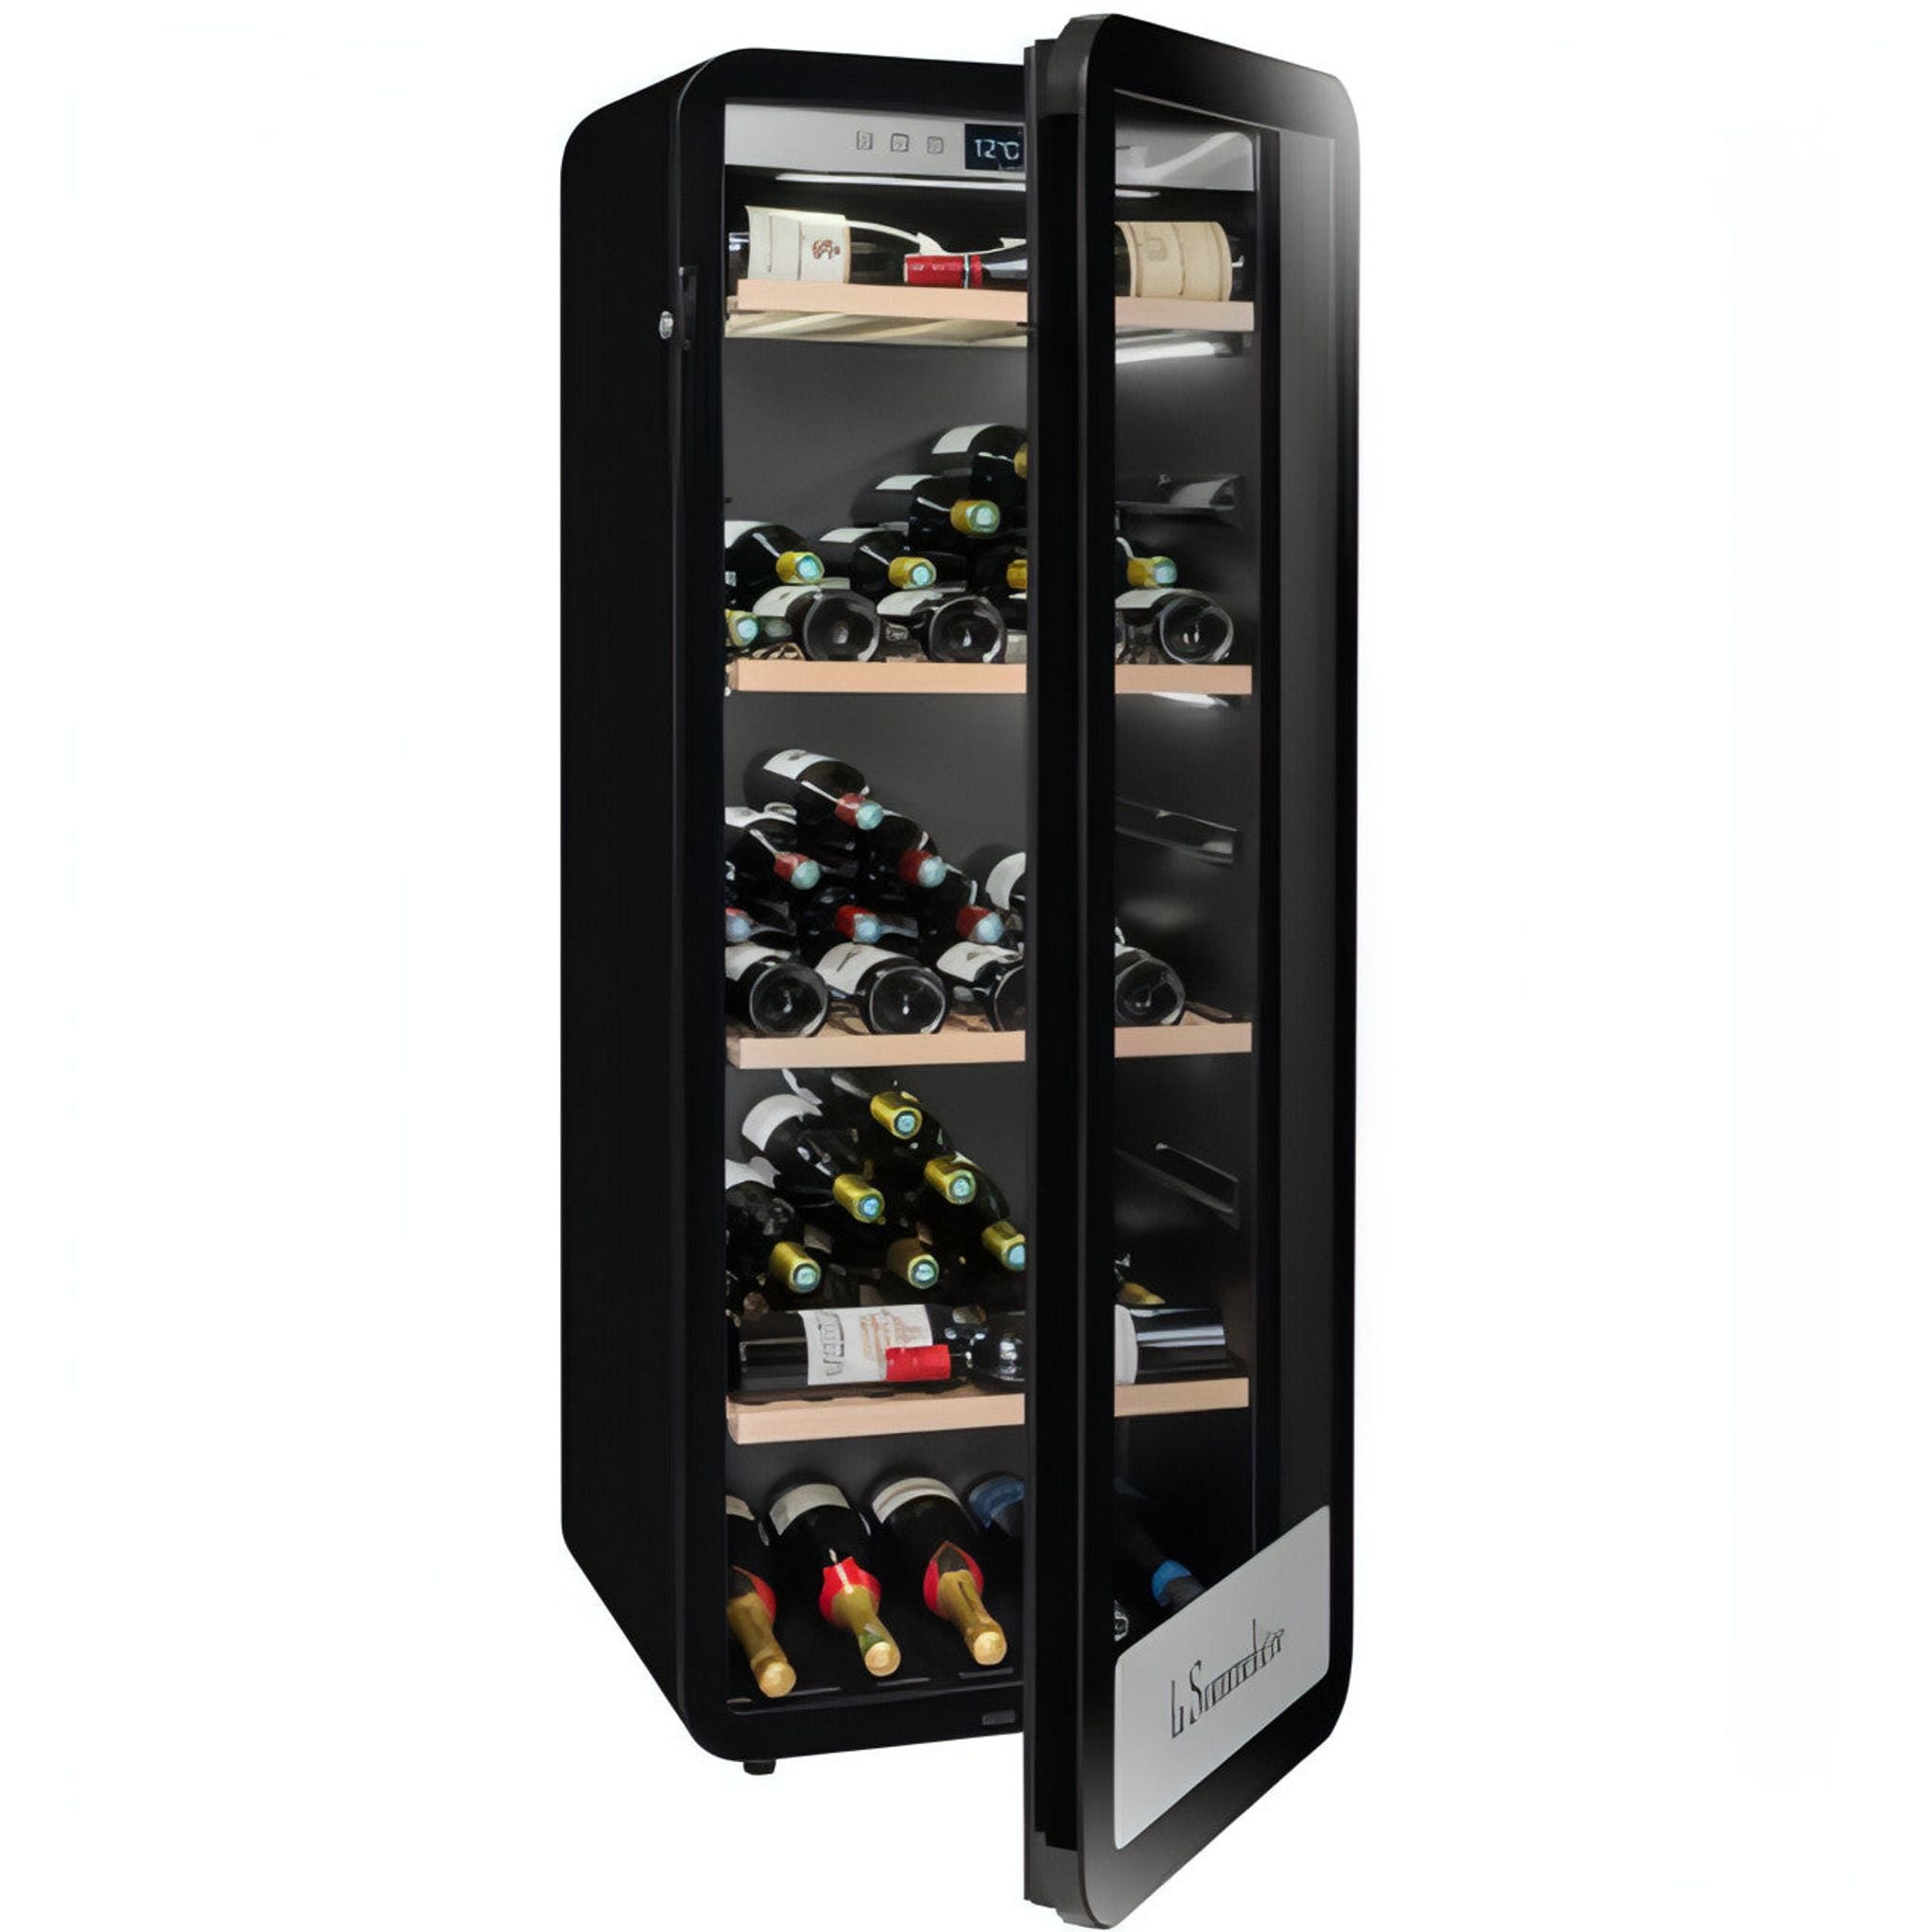 La Sommeliere - 147 Bottle Freestanding Single Zone Wine Cabinet APOGEE150PV